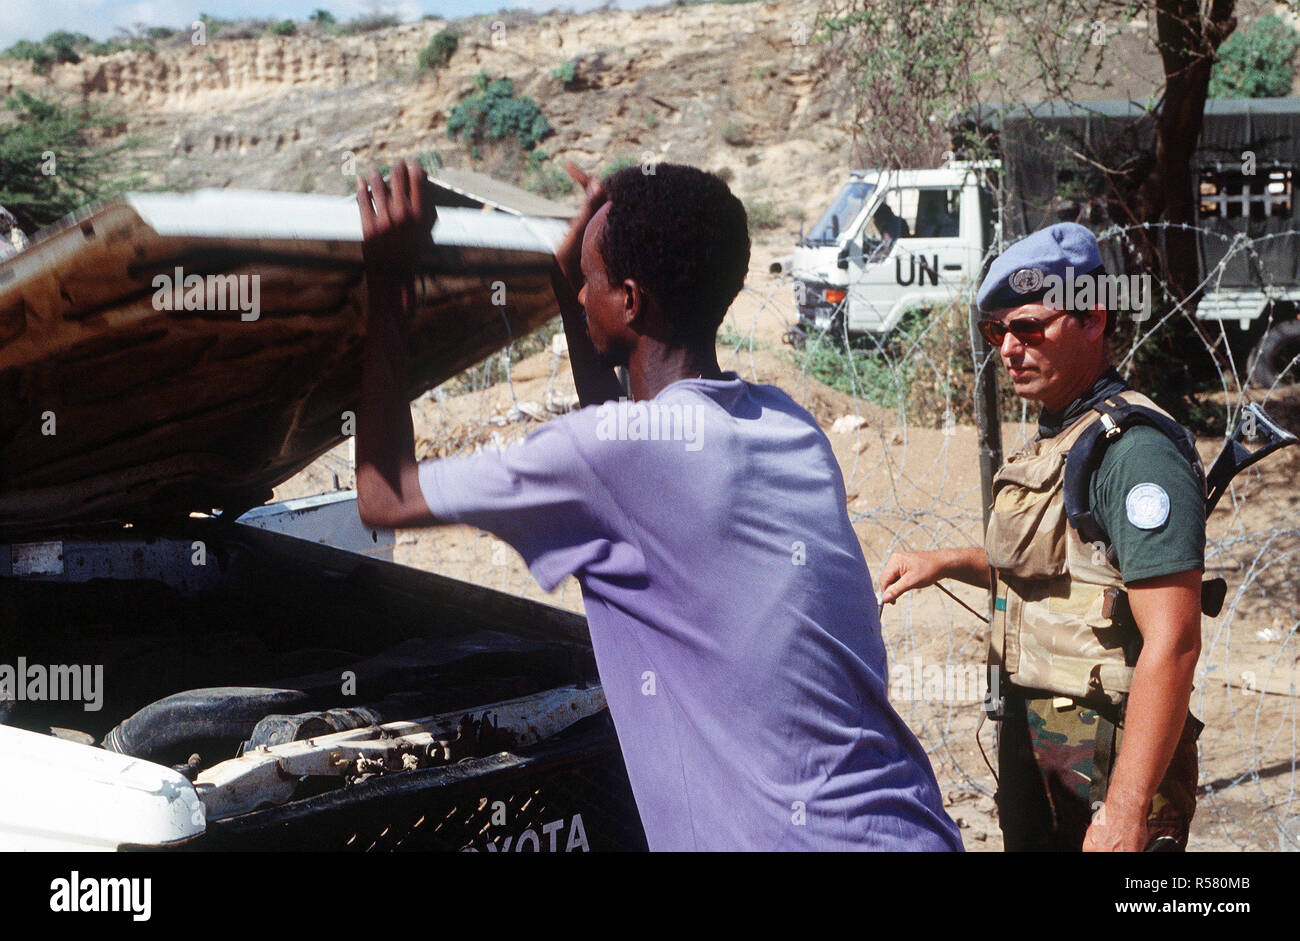 Un soldado belga realiza una comprobación de seguridad en un vehículo tratando de entrar en el recinto en Kismayo. El contingente belga es parte de las fuerzas de las Naciones Unidas en Somalia en apoyo de la operación continúan la esperanza. Foto de stock